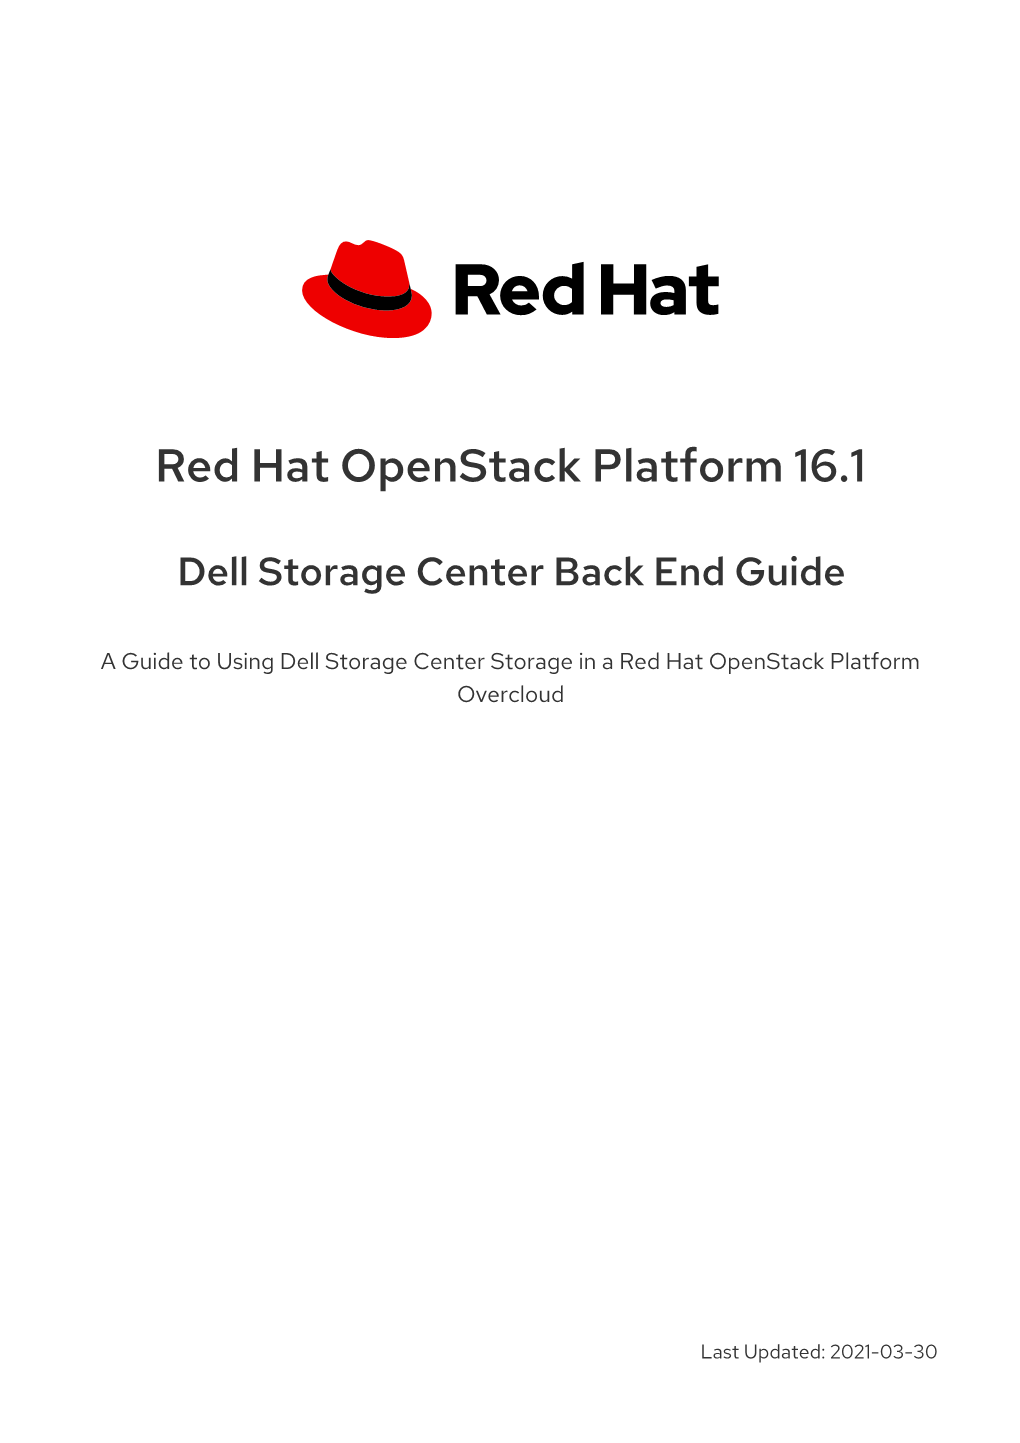 Red Hat Openstack Platform 16.1 Dell Storage Center Back End Guide